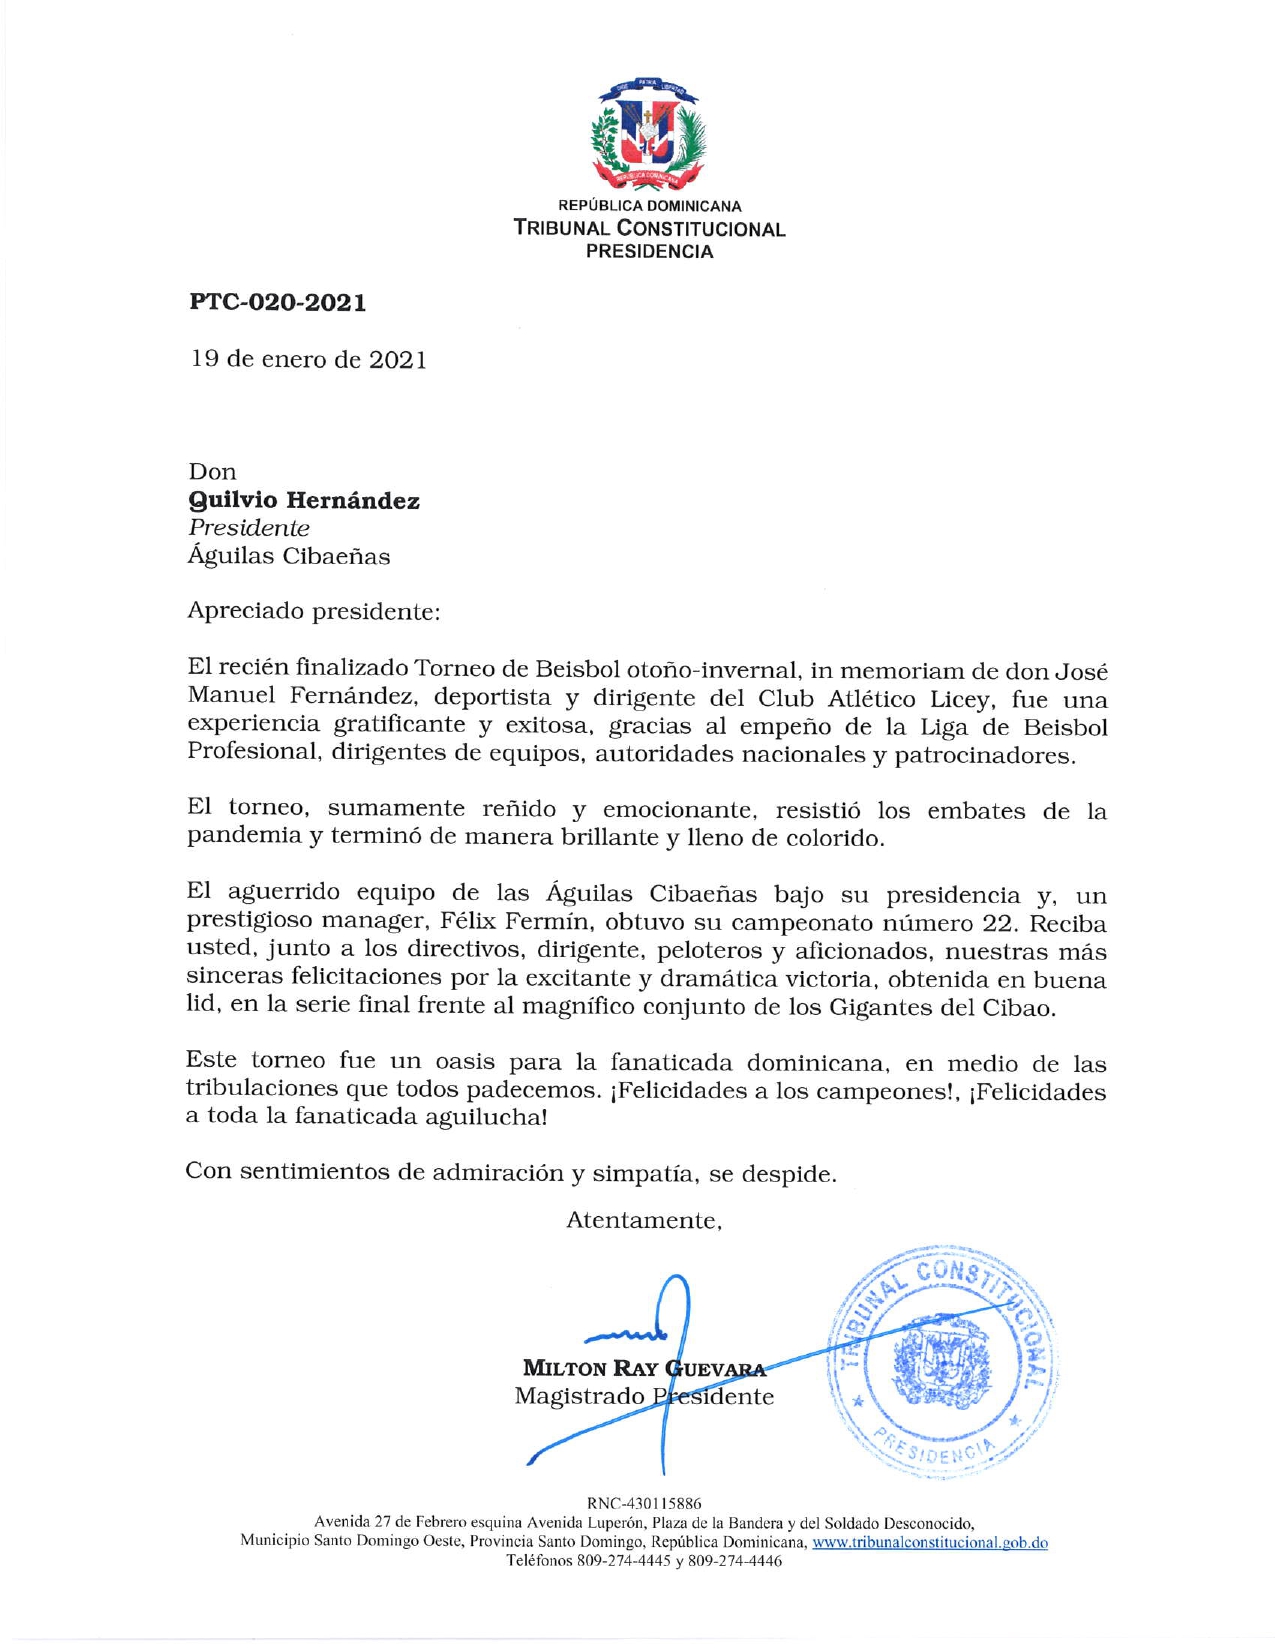 Carta de felicitación a las Águilas Cibaeñas, en ocasión de su triunfo en el Torneo de Béisbol otoño-invernal 2020-2021